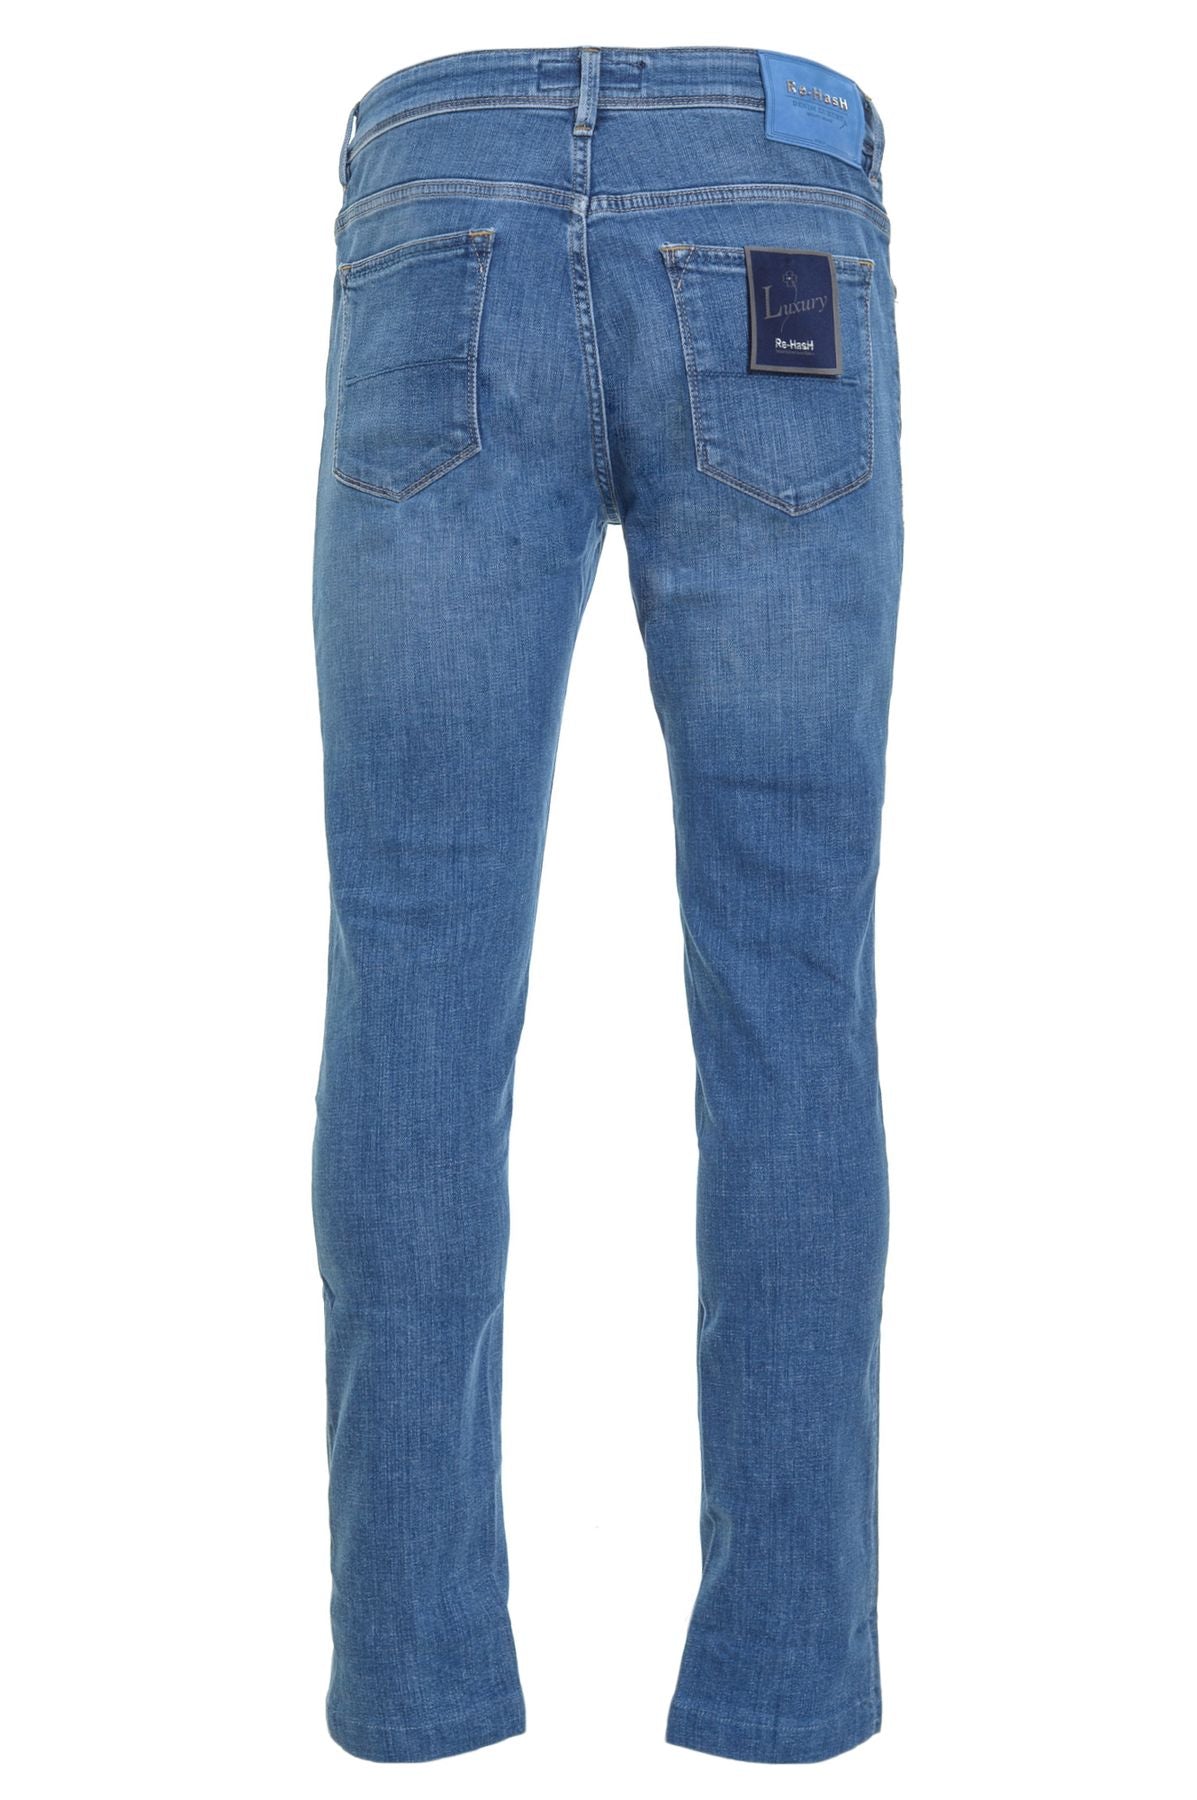 Re-HasH Jeans Autunno/Inverno p015l2663rubens